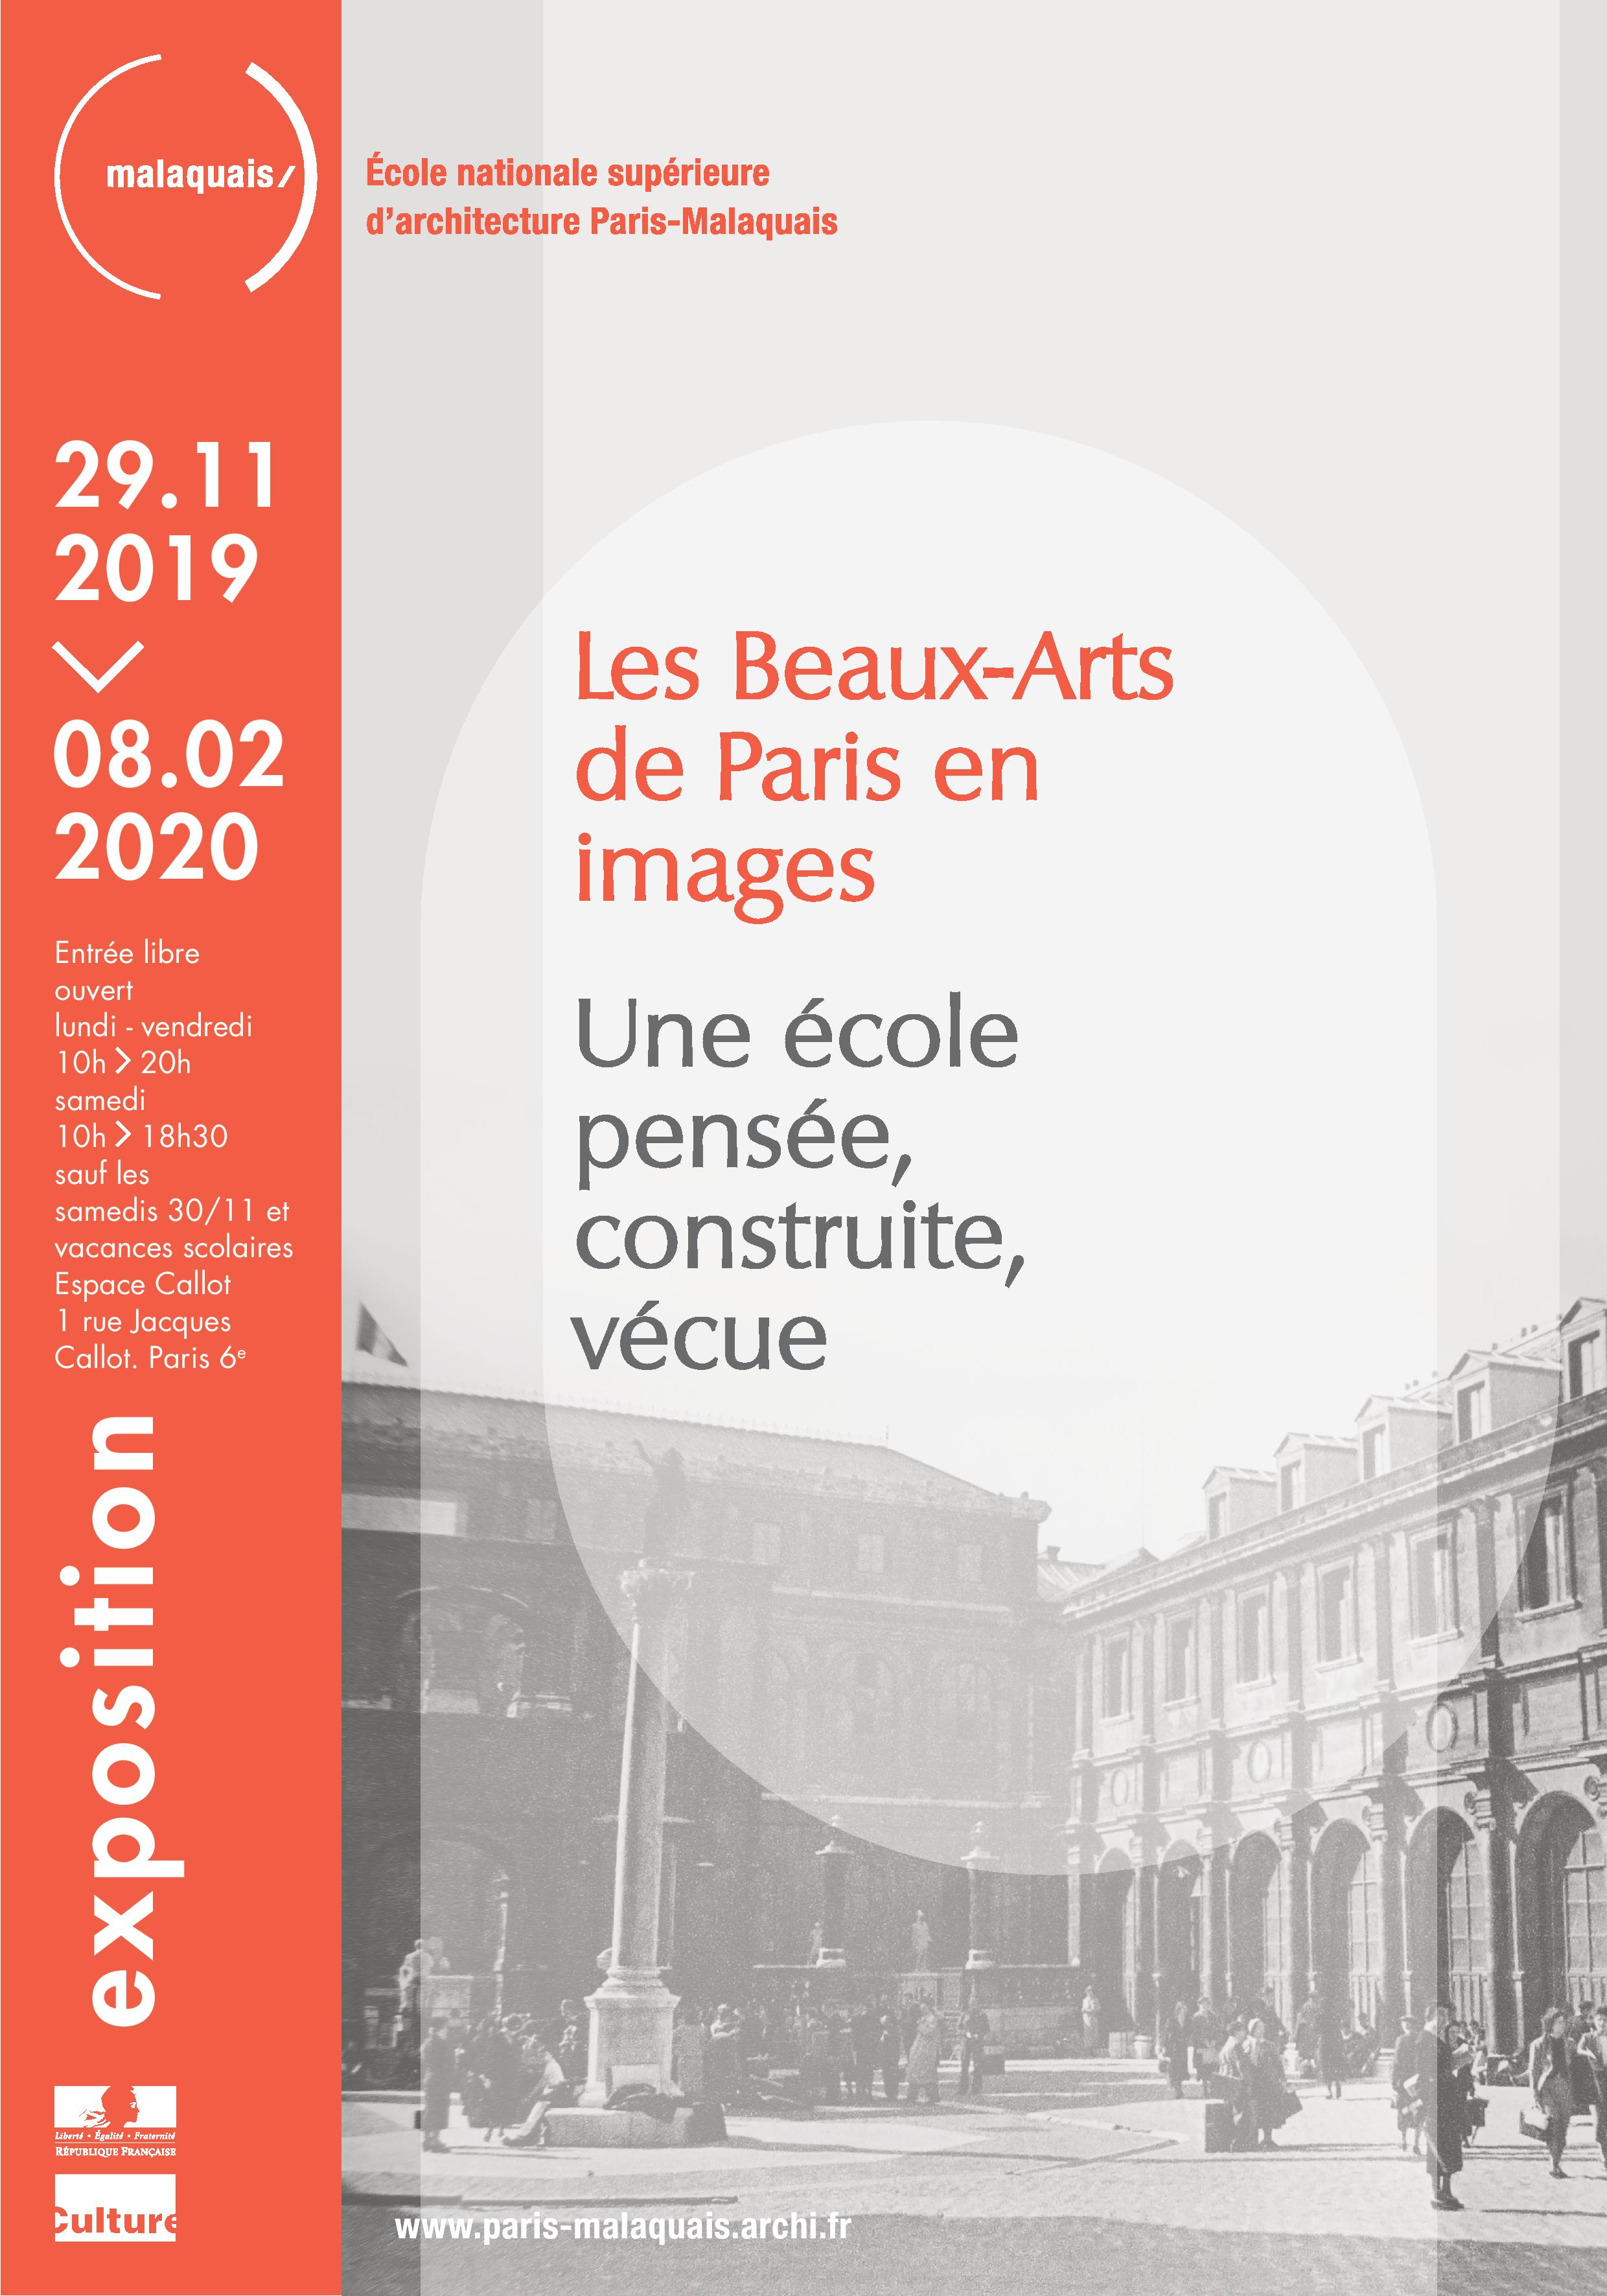 28/11/29-02/02/20 - Exposition "Les Beaux-Arts de Paris en images"